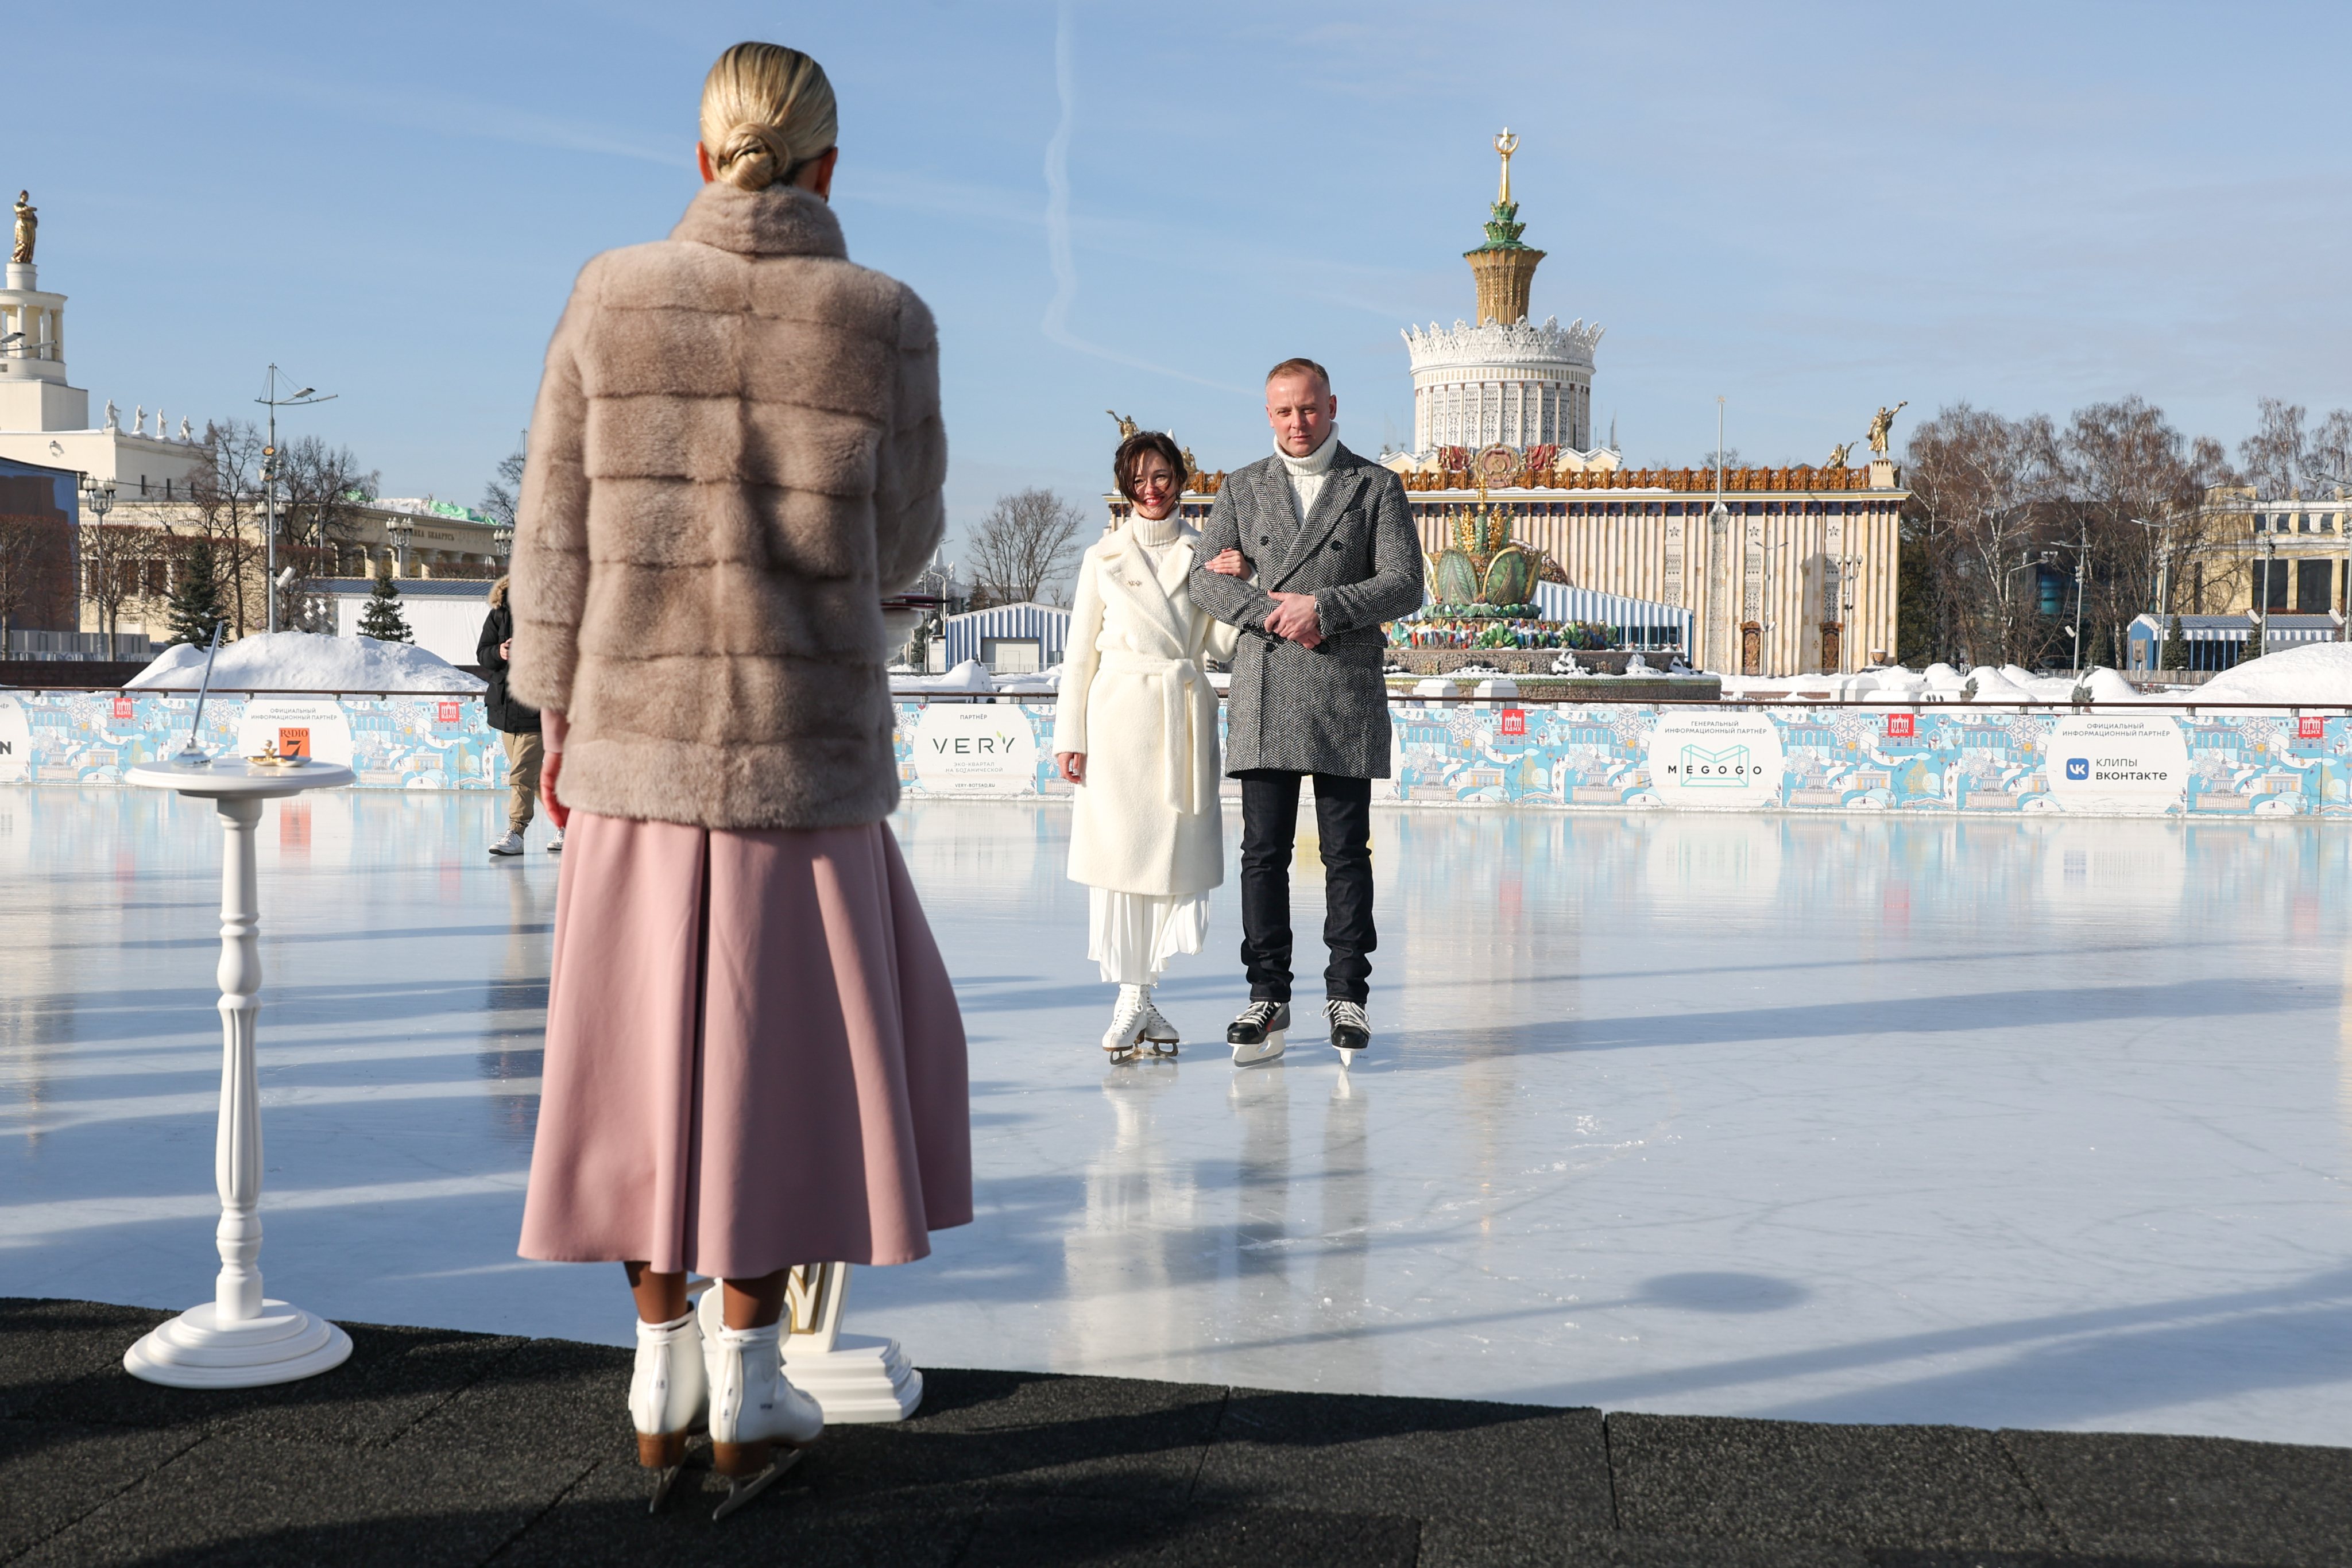 Celebração do Dia de São Valentim, também conhecido como Dia dos Namorados, em Moscovo, Rússia. Realizam-se casamentos numa cerimónia que tem lugar num lago congelado